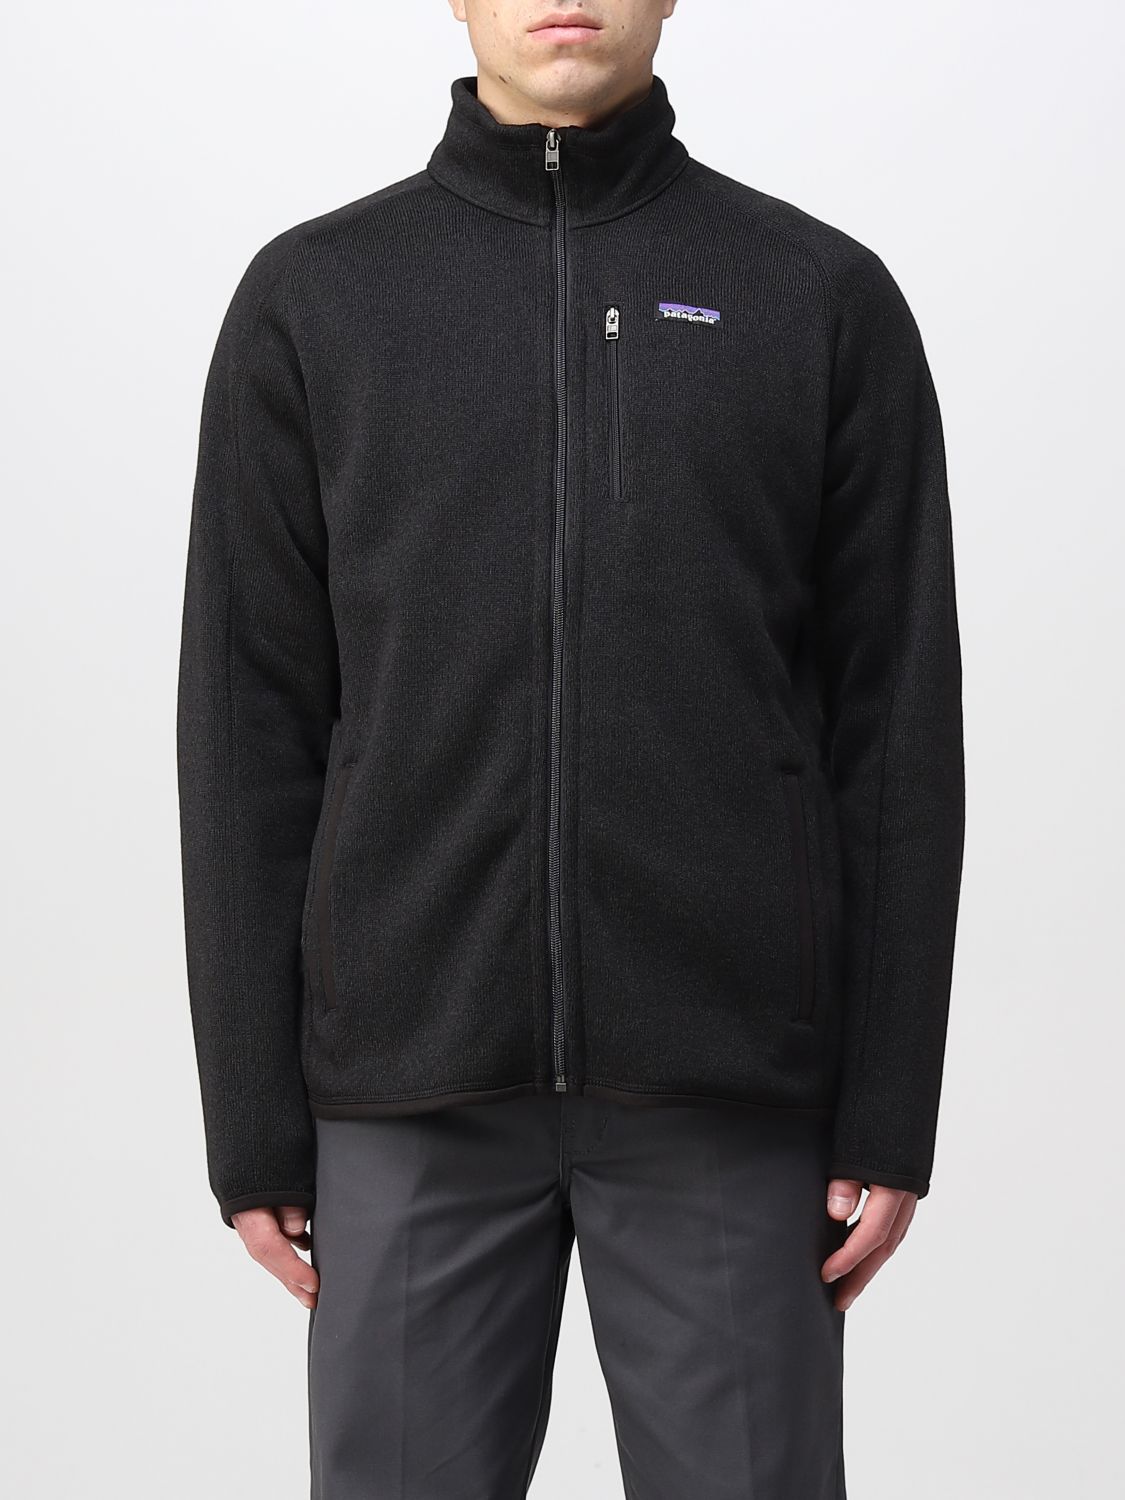 PATAGONIA: sweatshirt for man - Black | Patagonia sweatshirt 25528 ...